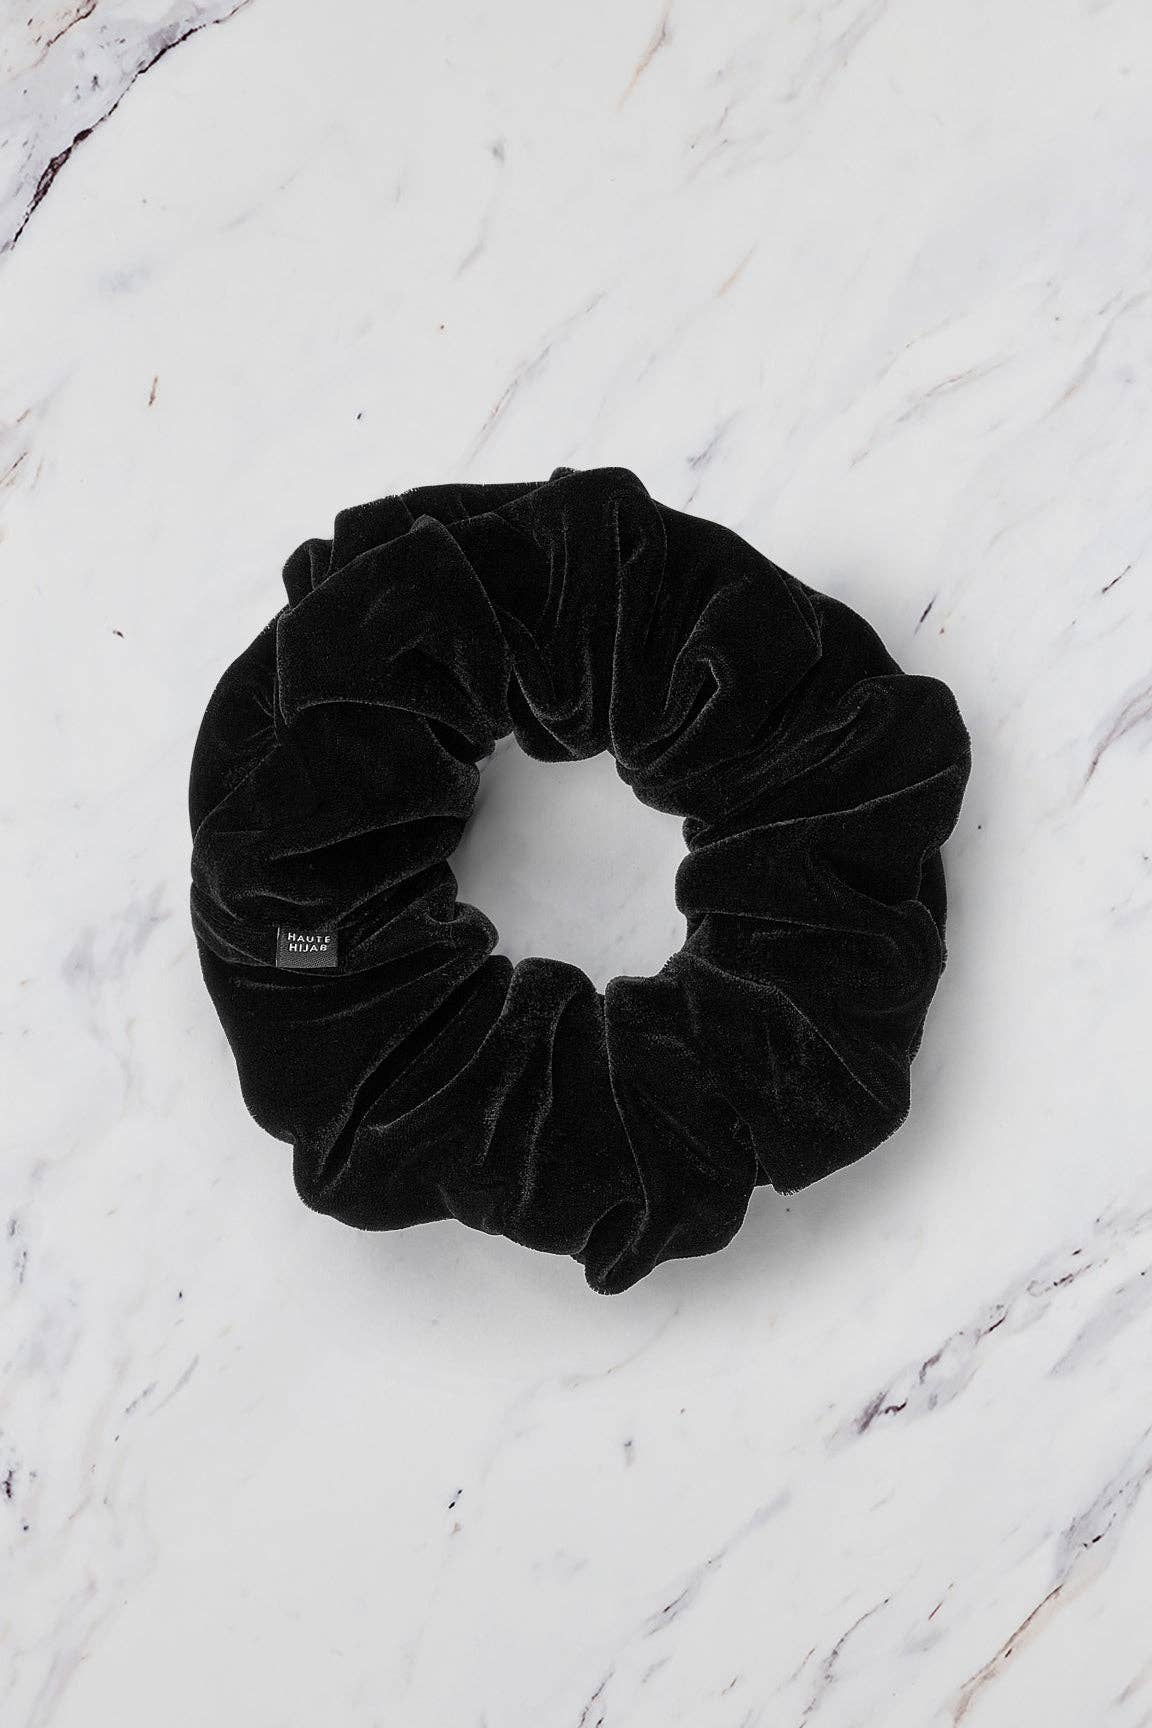 Large Velvet Shaping Scrunchie – Black: Large 8.5" / Black / Velvet